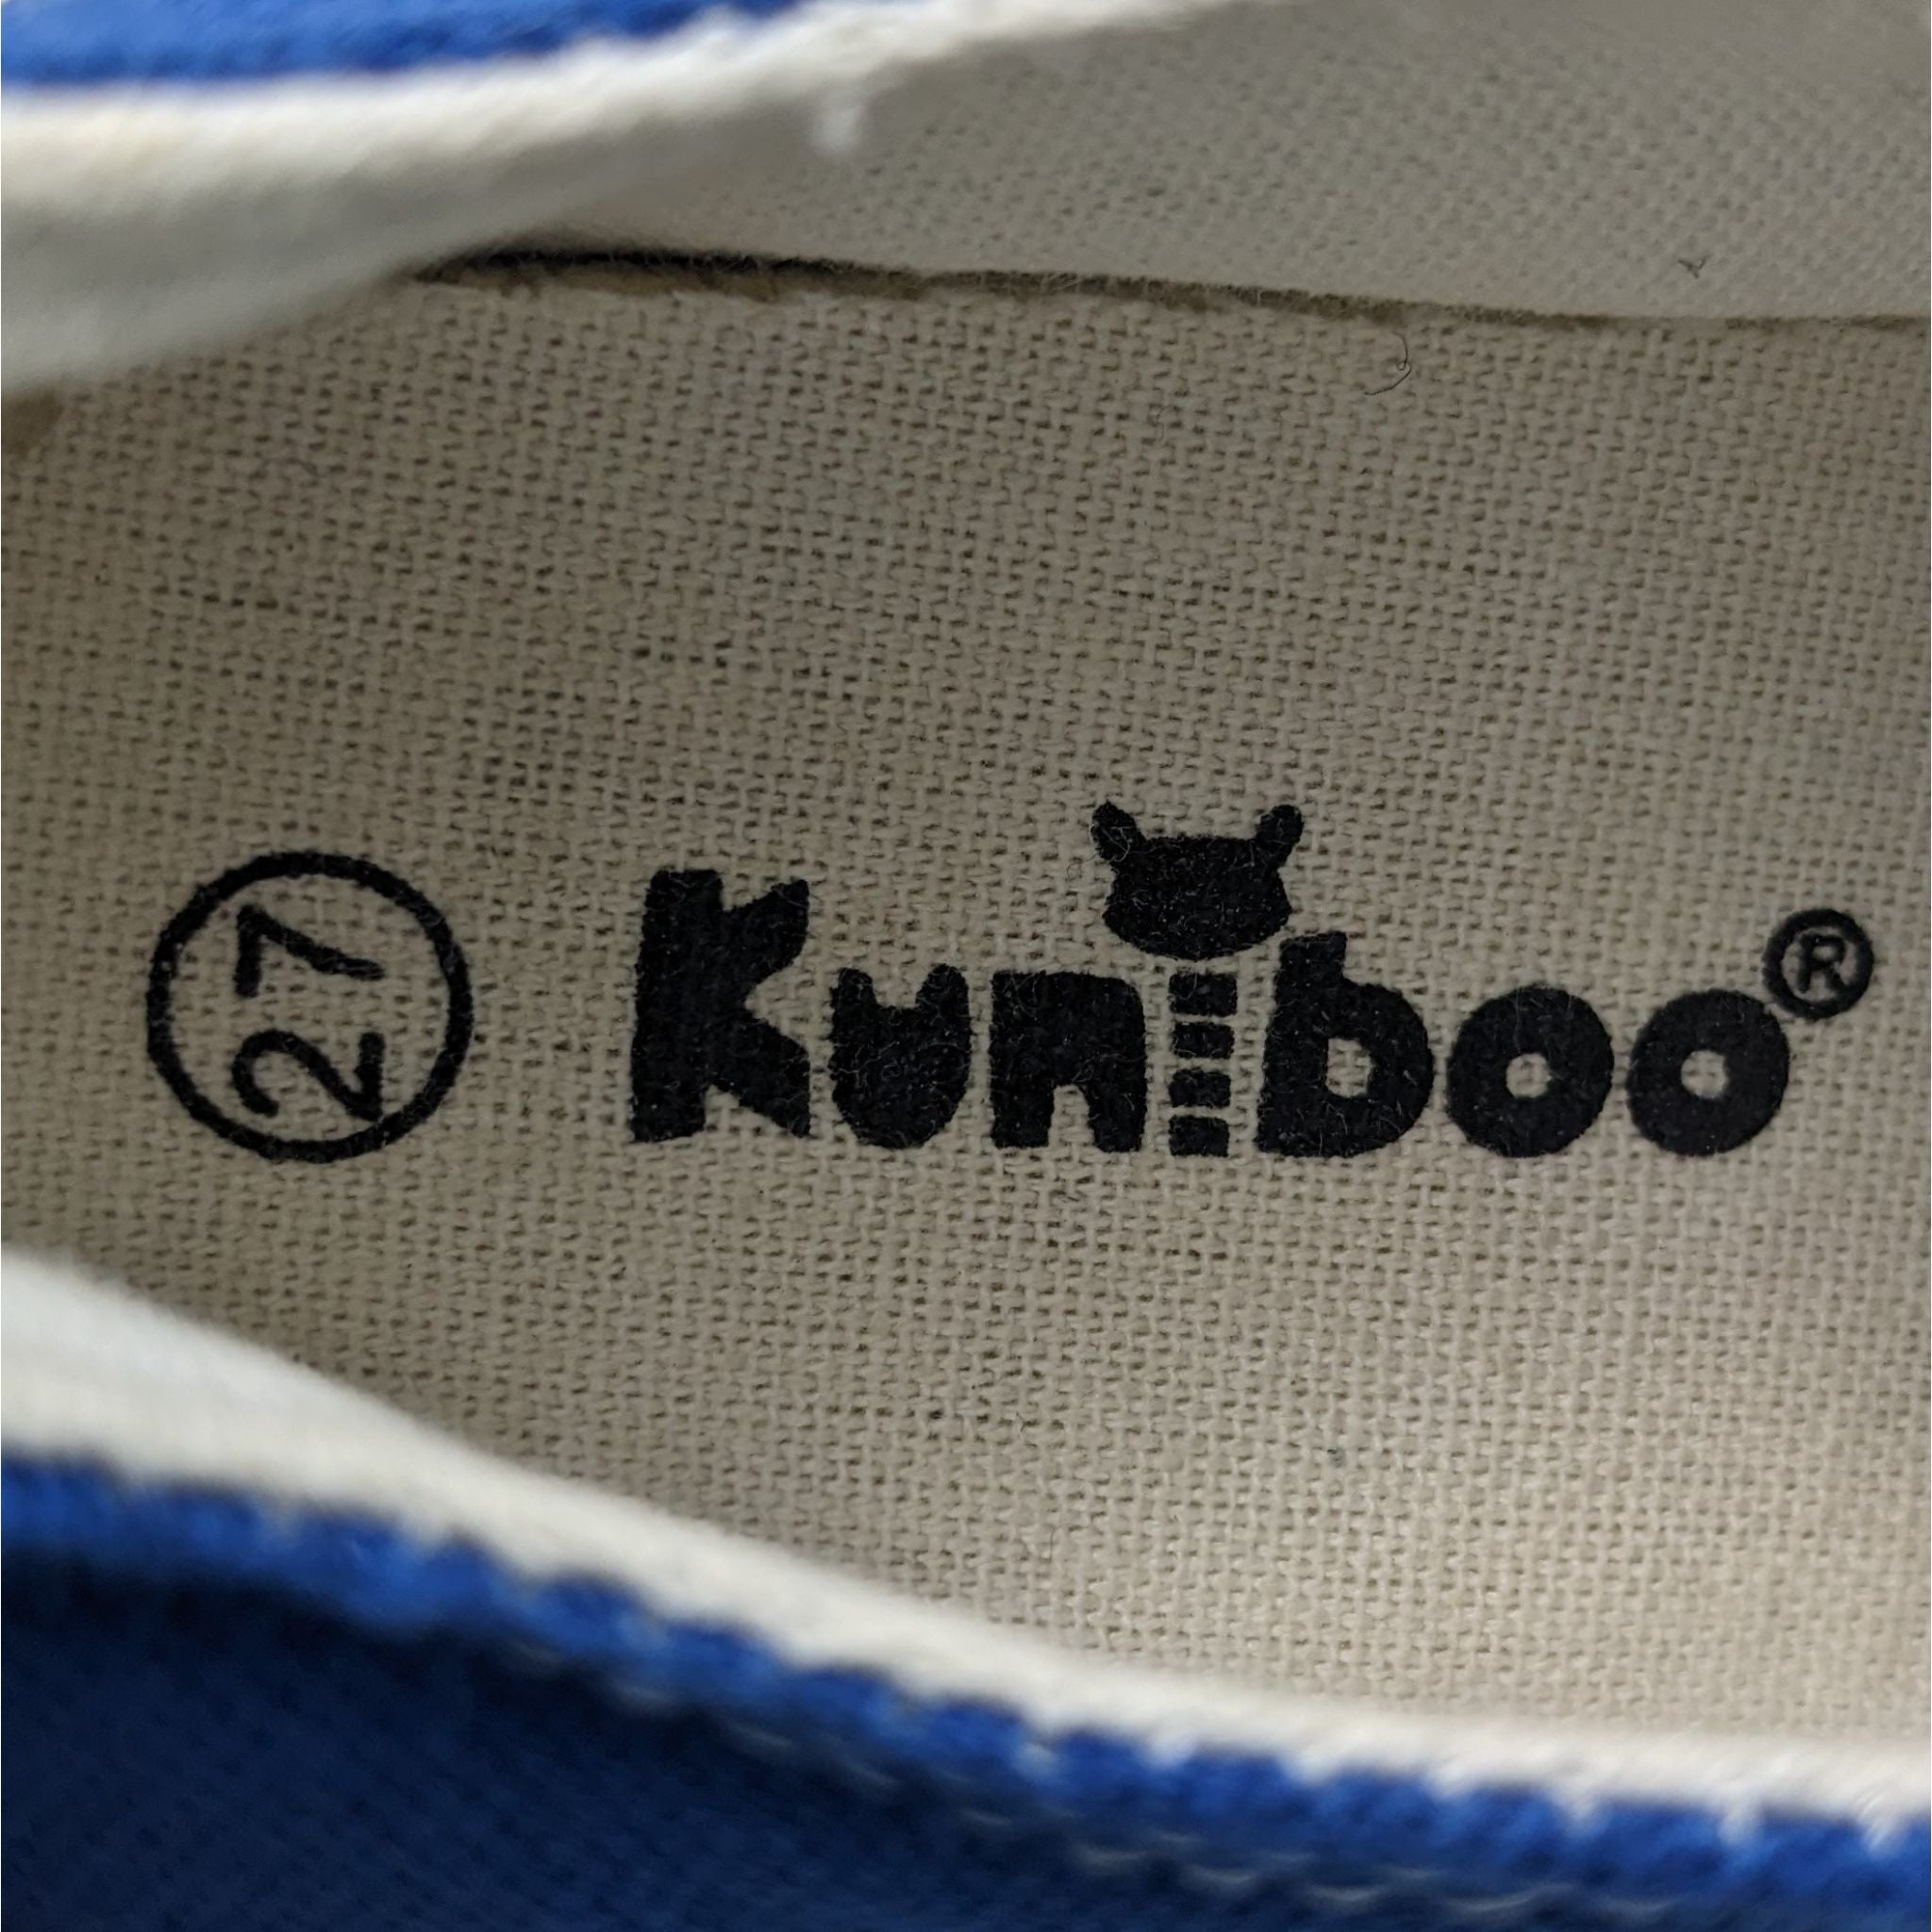 Kuniboo Blue Sneakers